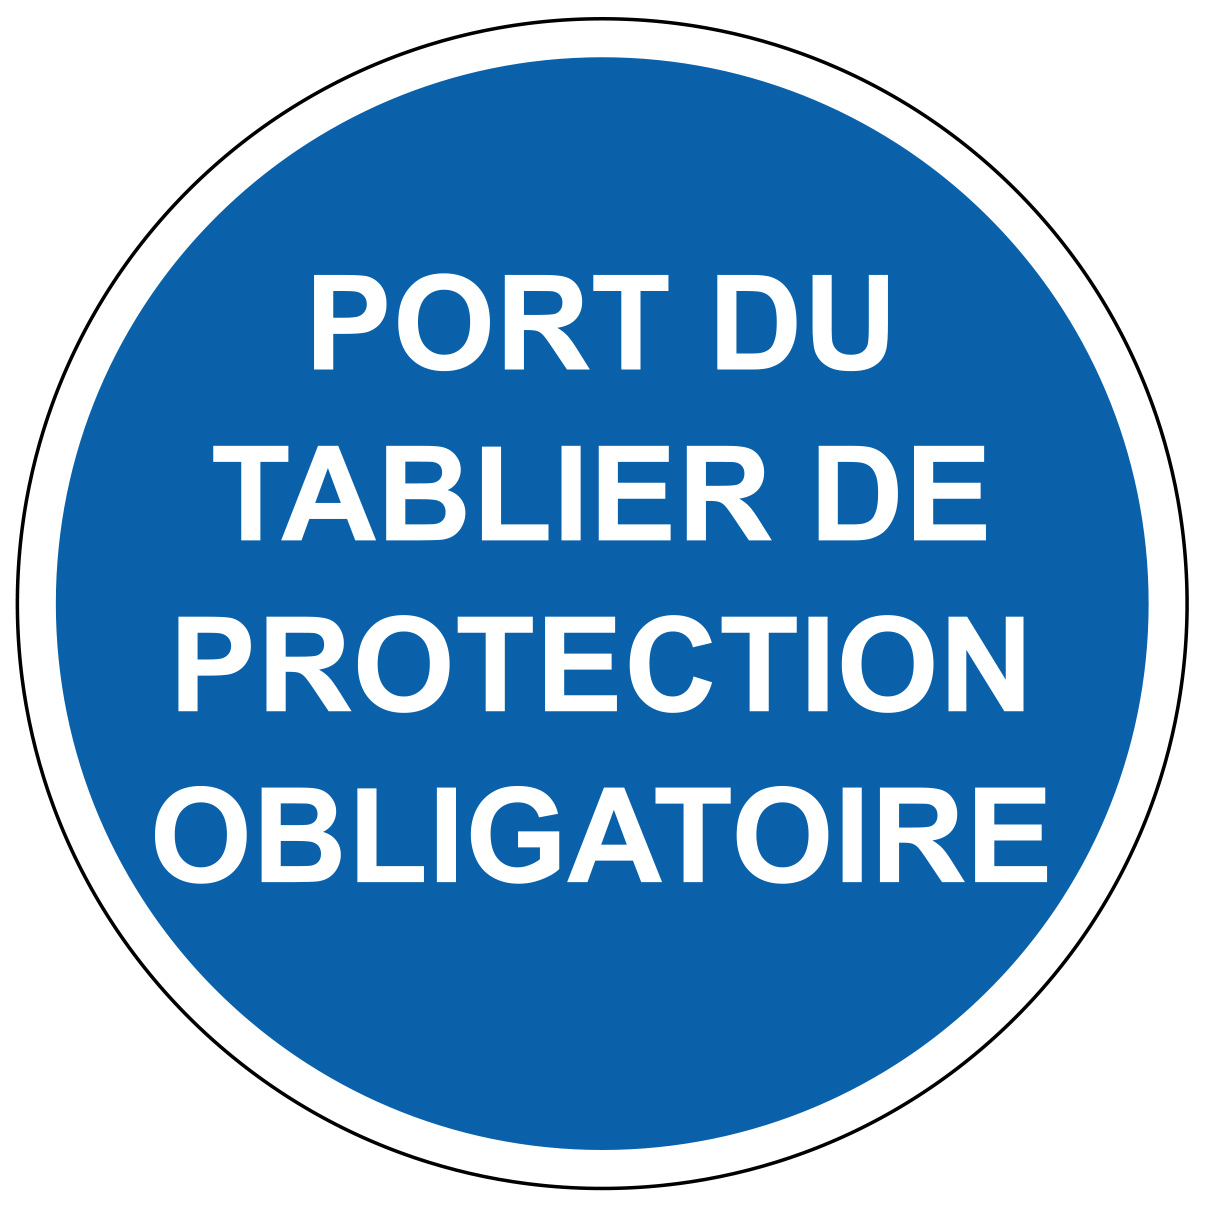 Port du tablier de protection obligatoire - M306 - étiquettes et panneaux d'obligation et de consigne